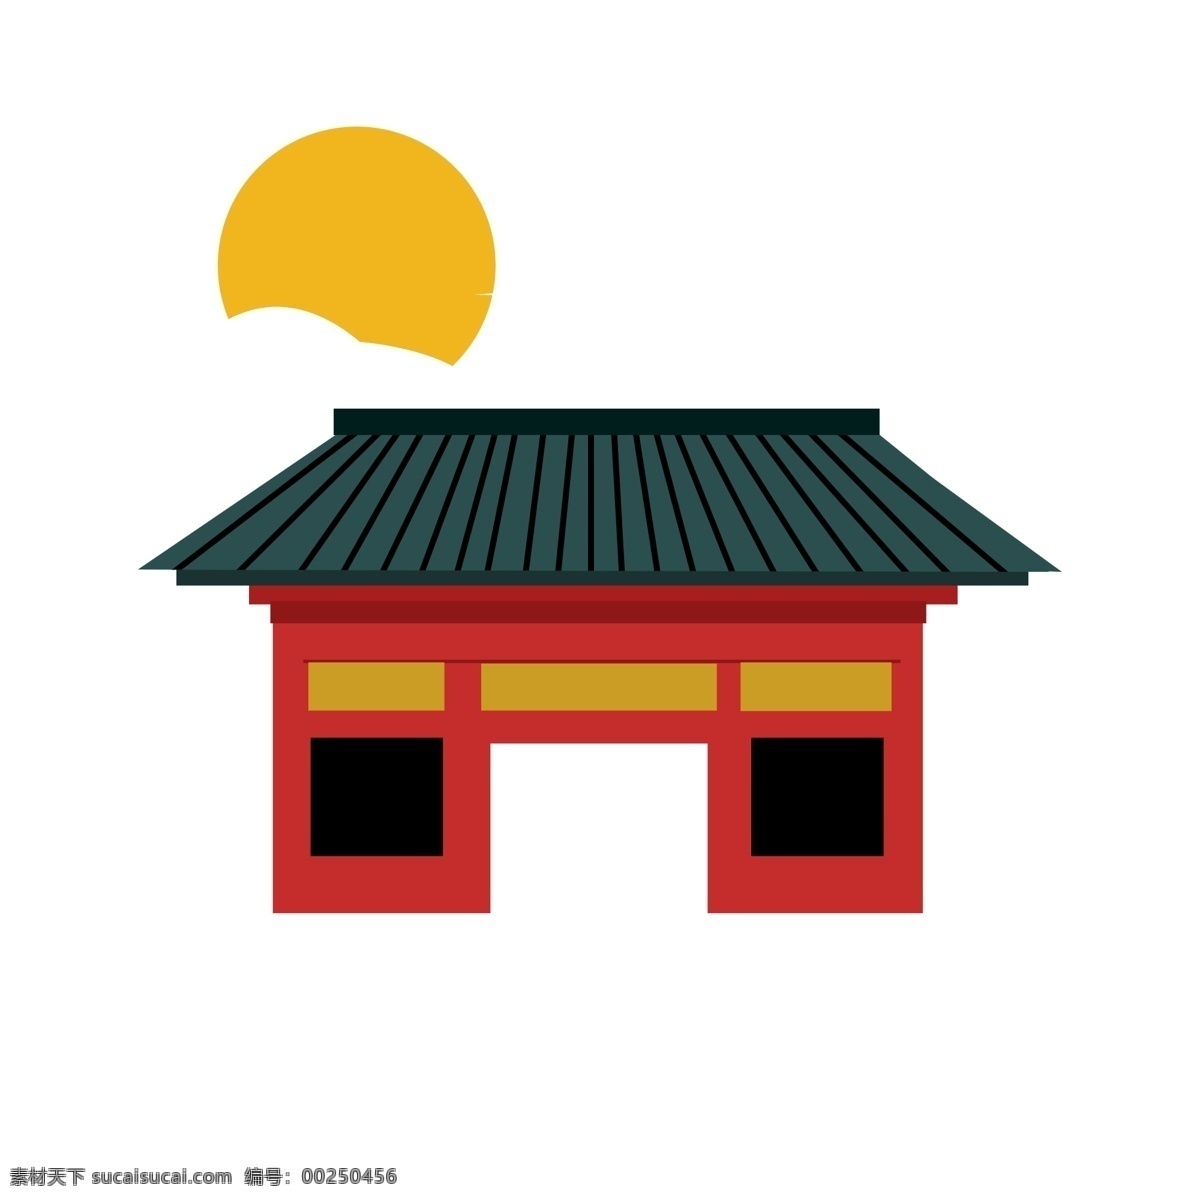 日本 鸟居 装饰 插画 日本鸟居 鸟居建筑 黄色的太阳 漂亮的鸟居 鸟居装饰 鸟居插画 立体鸟居